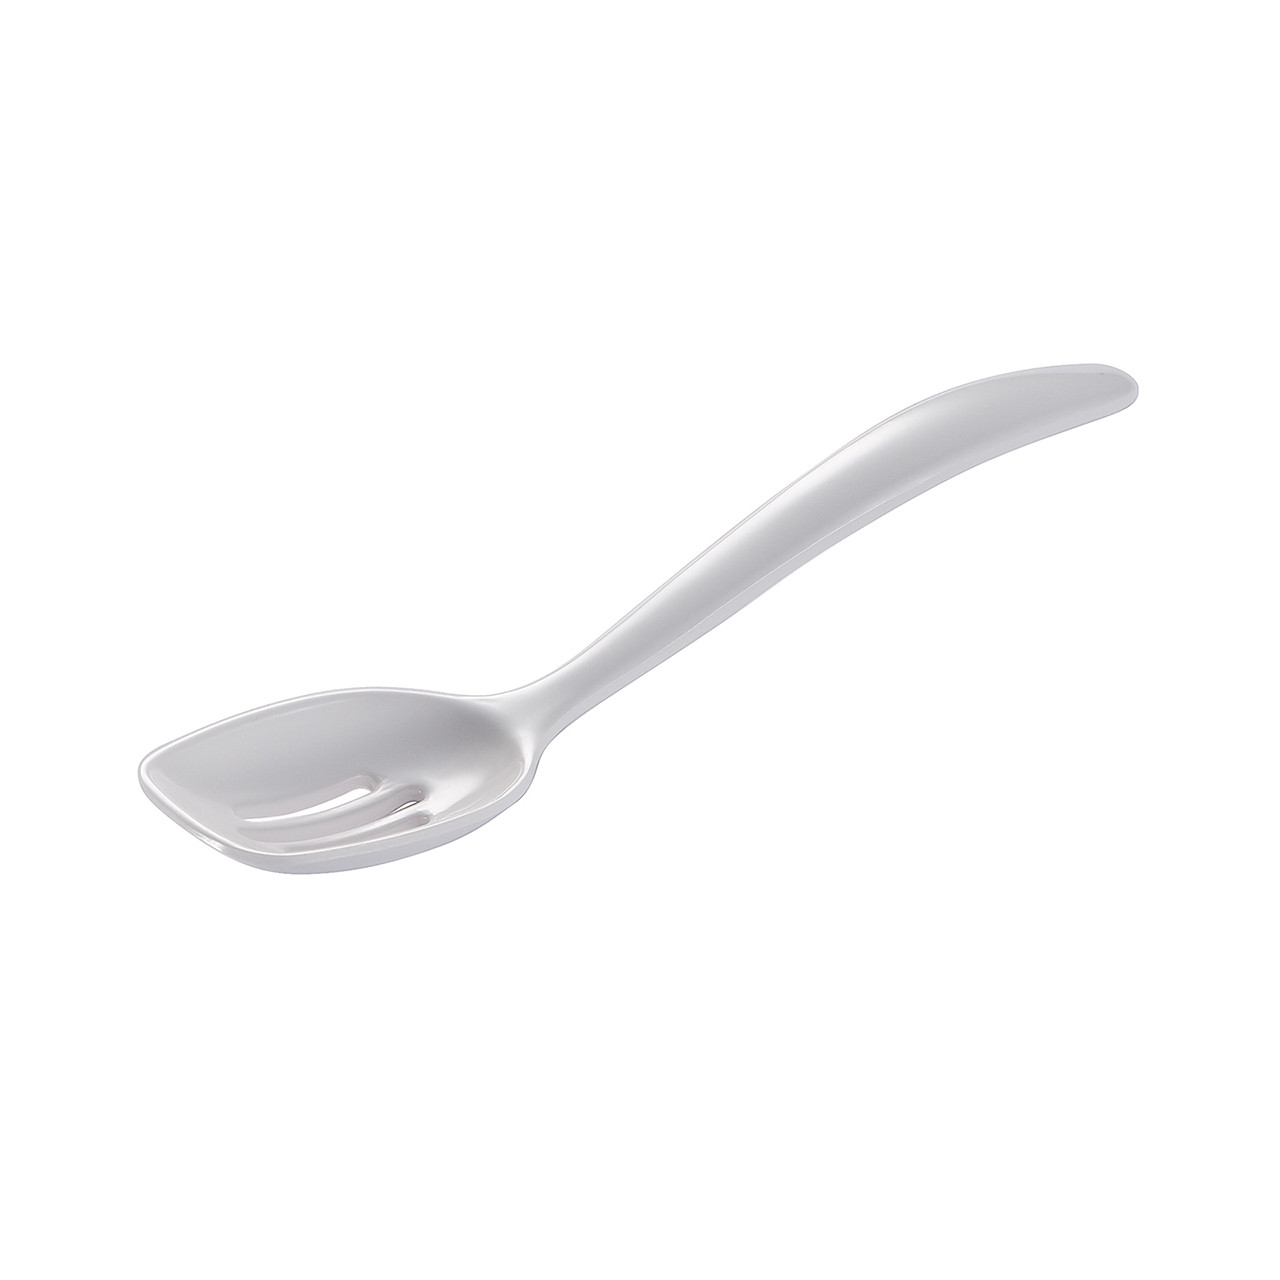 Gourmac 12 Melamine Mixing Spoon - White